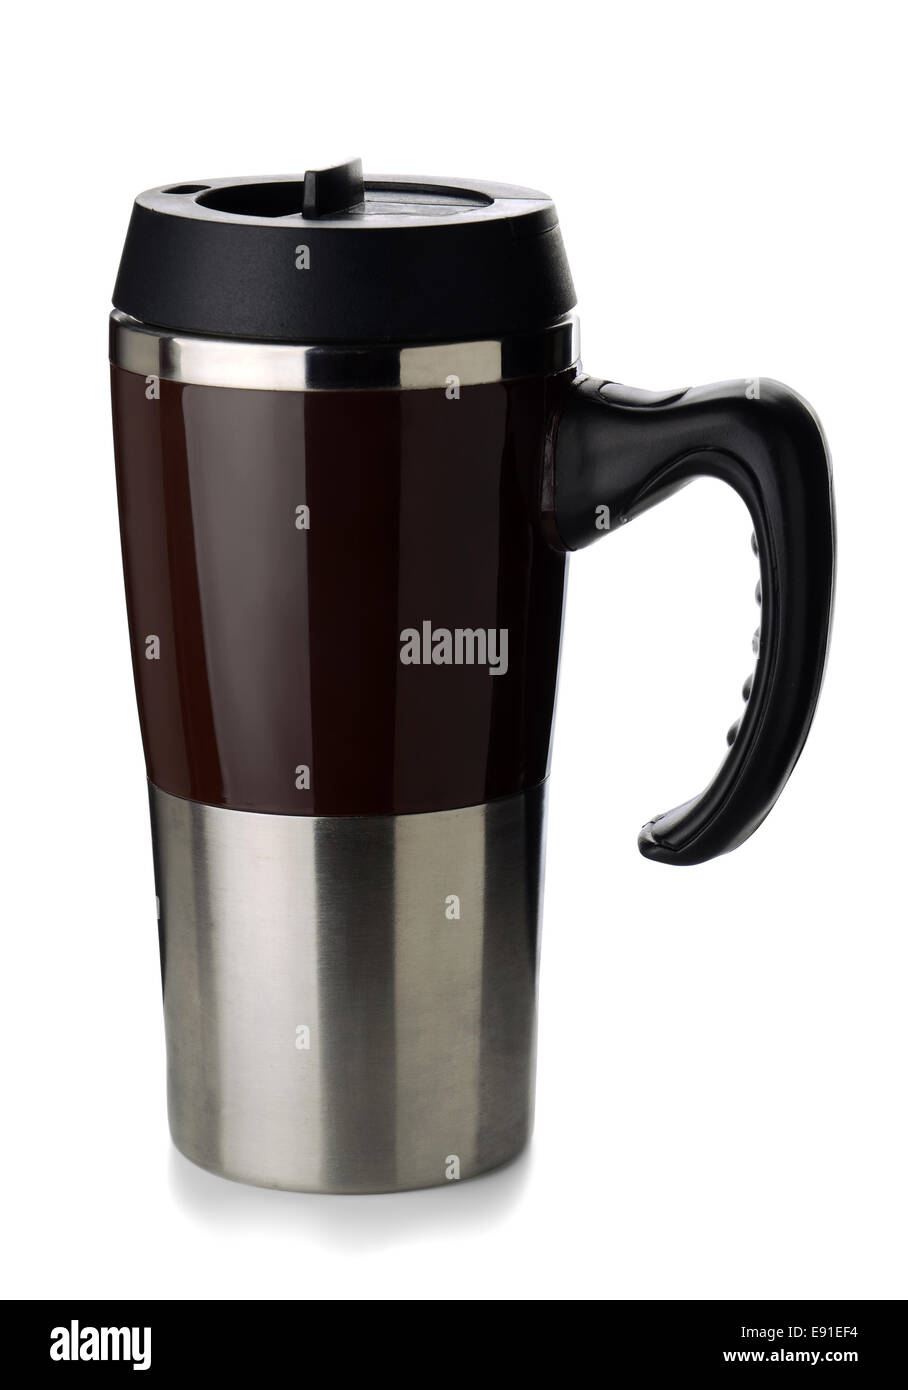 https://c8.alamy.com/comp/E91EF4/coffee-thermos-mug-E91EF4.jpg